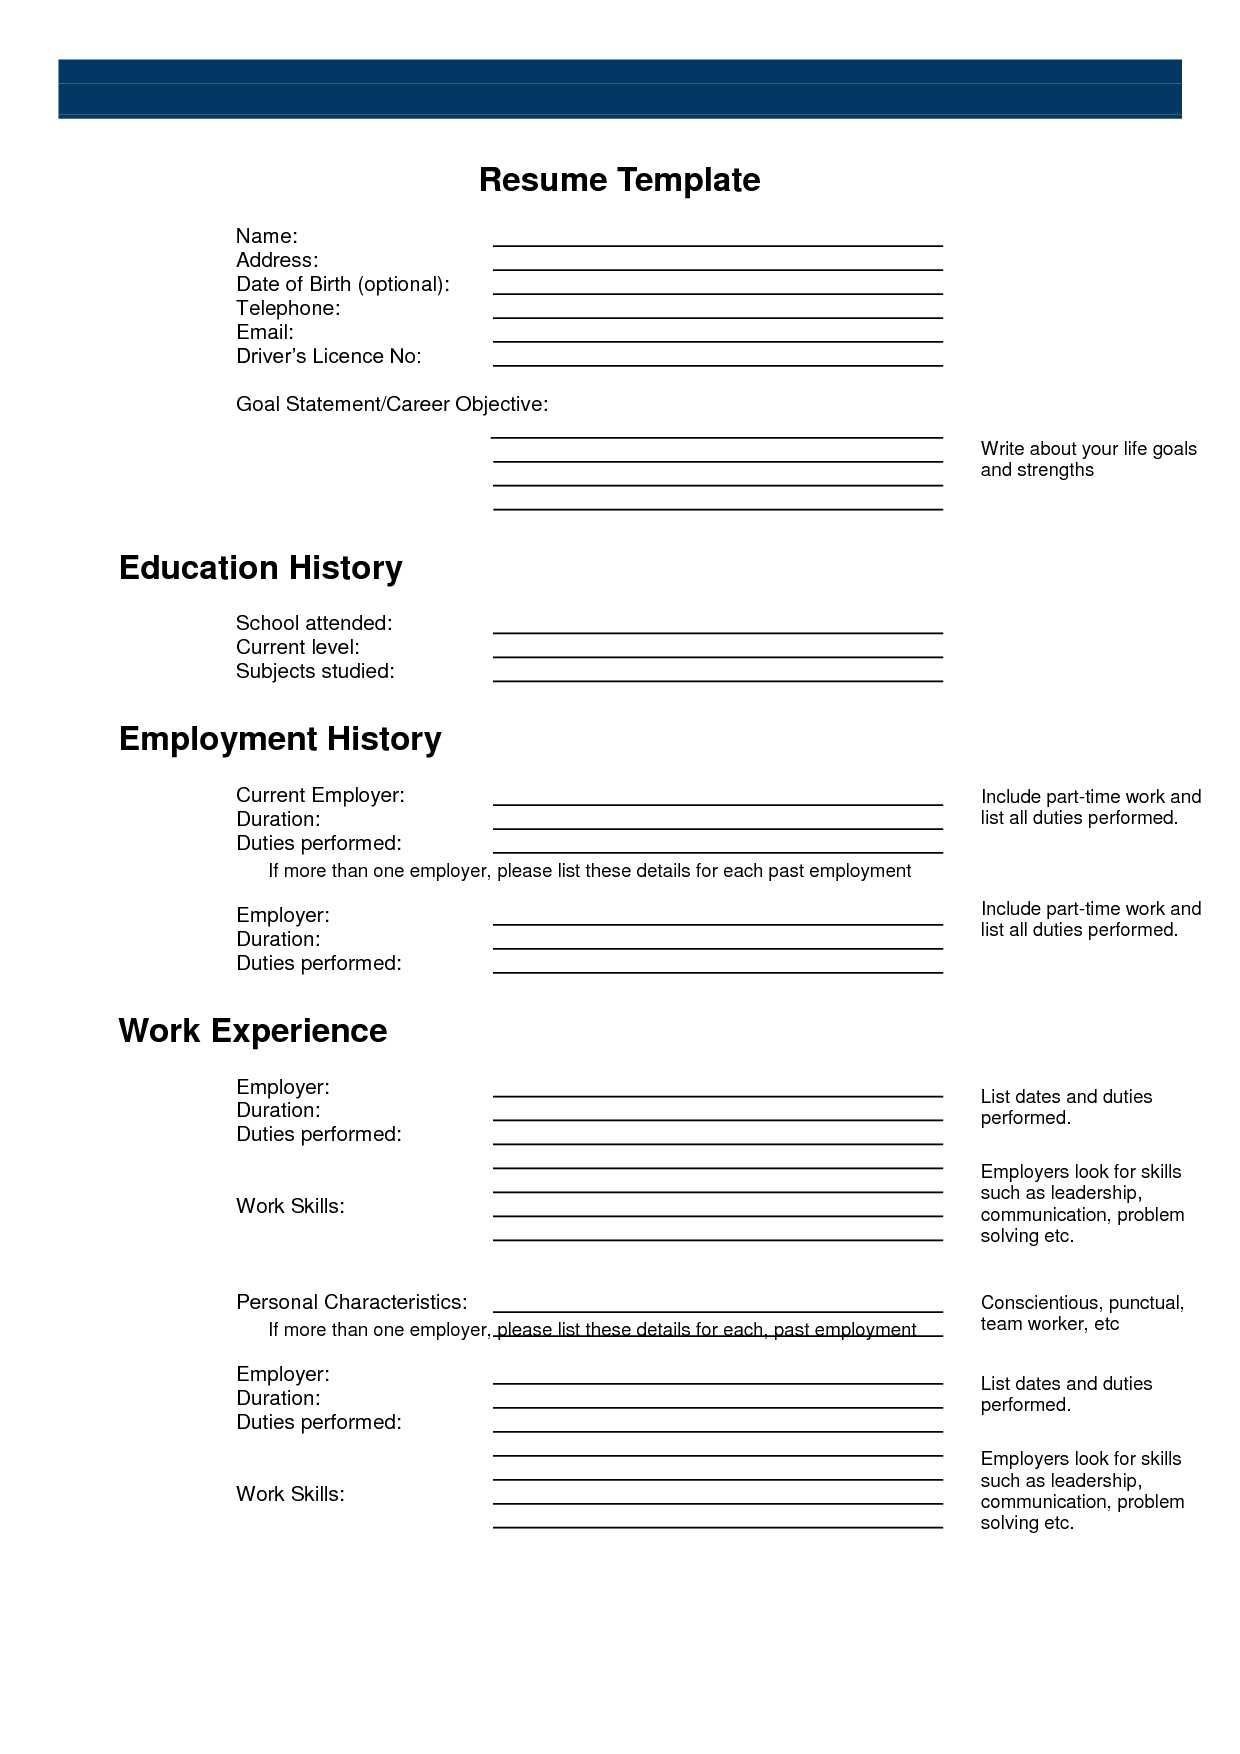 Pinanishfeds On Resumes | Free Printable Resume, Free Printable - Free Printable Blank Resume